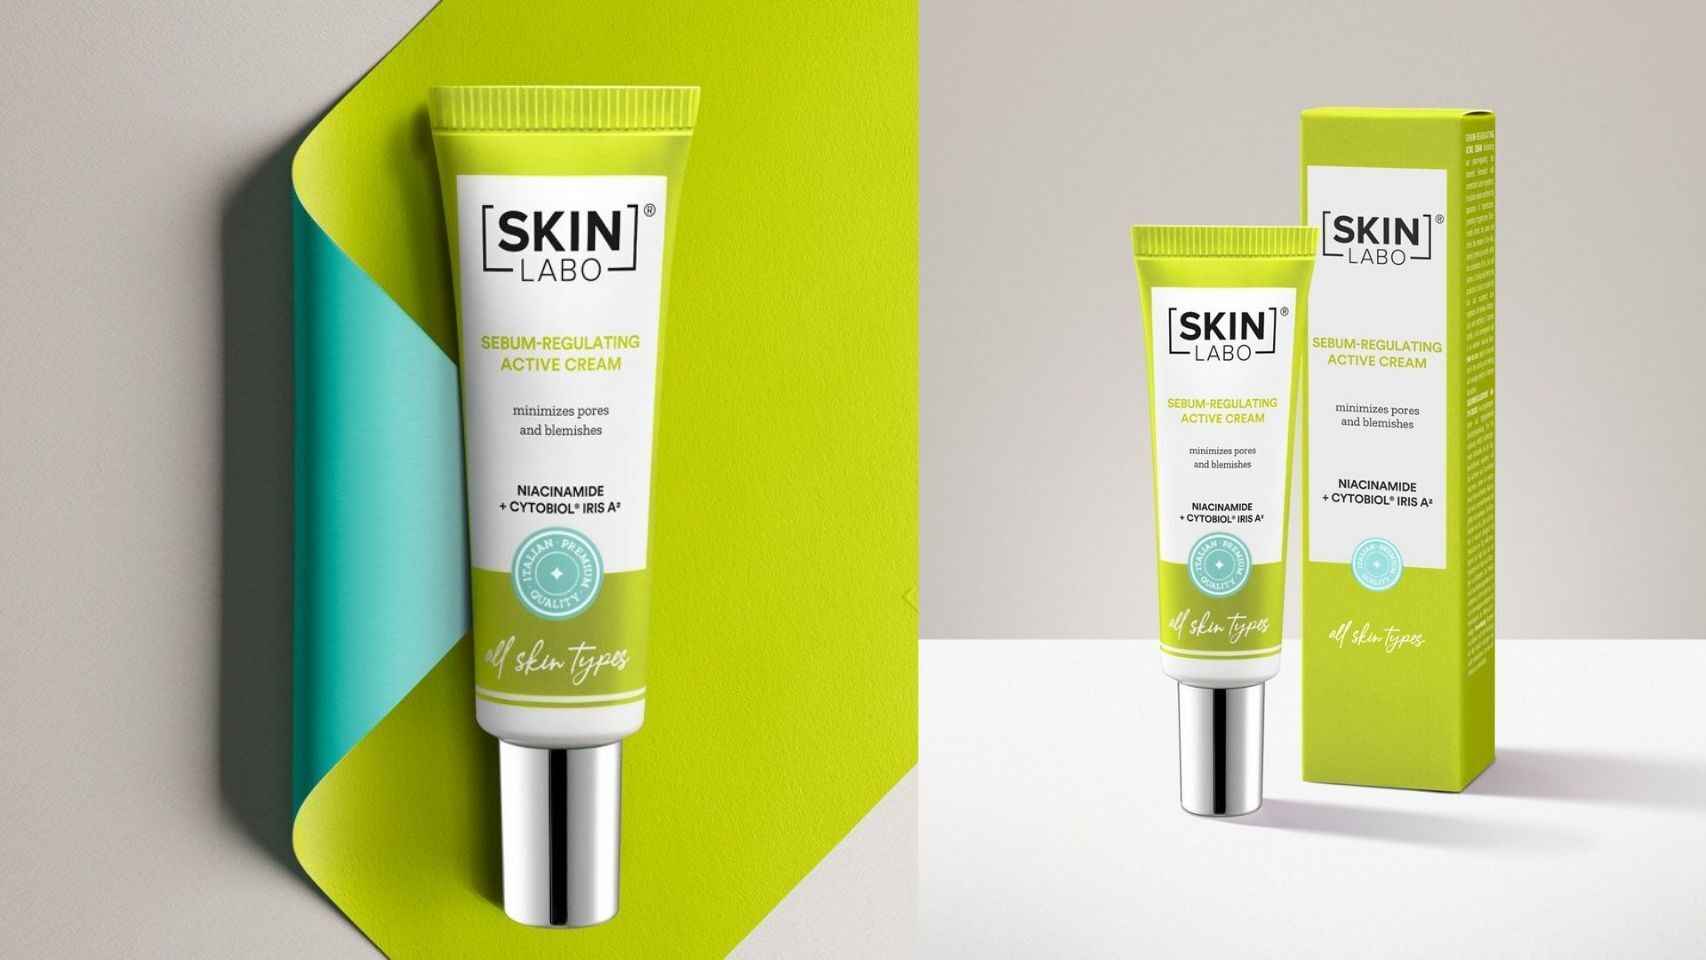 La pre-base de Skin Labo ayuda a reducir el brillo de la piel, controlando la producción de sebo.